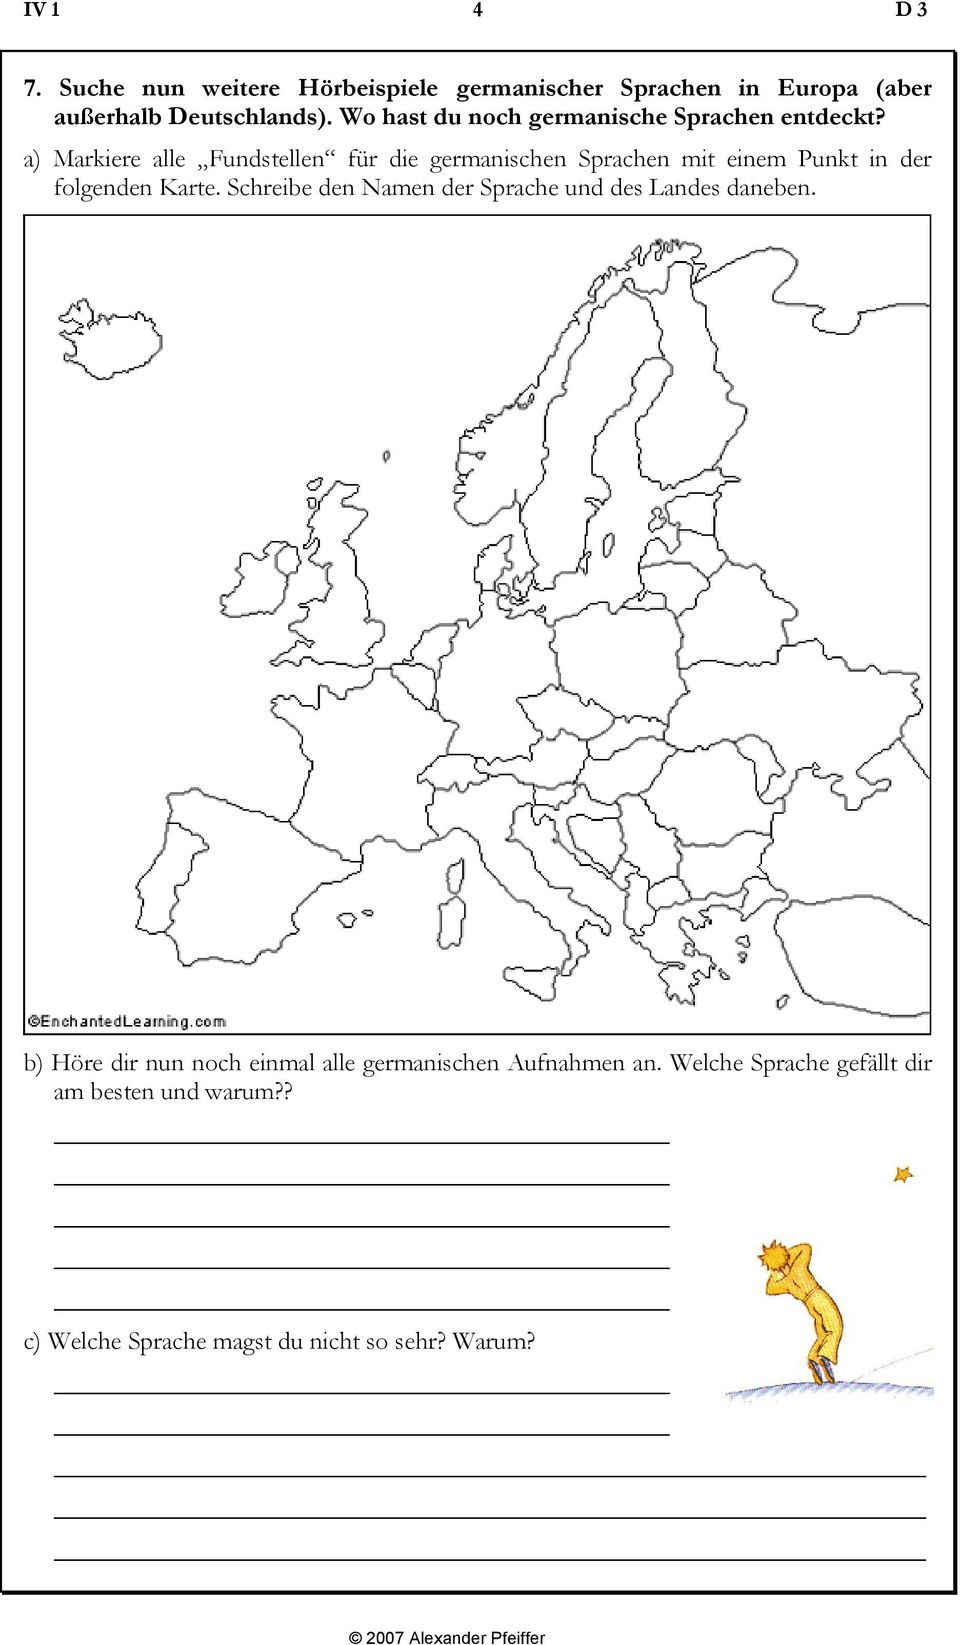 a) Markiere alle Fundstellen für die germanischen Sprachen mit einem Punkt in der folgenden Karte.